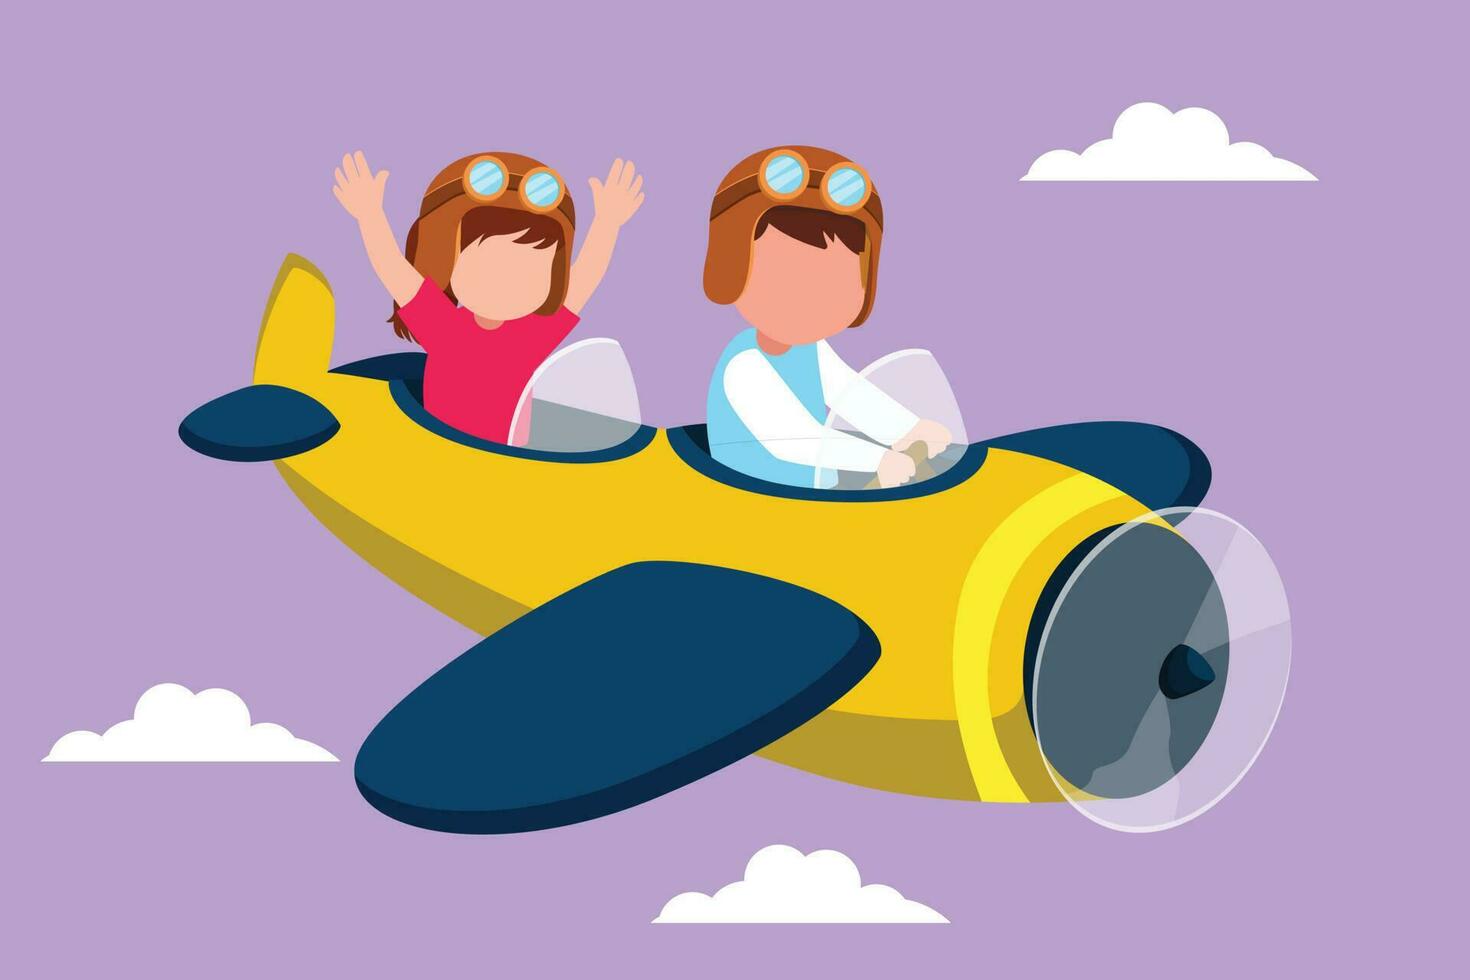 Grafik eben Design Zeichnung wenig Junge Betriebs Flugzeug und Mädchen wie Passagiere. Kinder fliegend im Flugzeug. fliegend Flugzeug mögen echt Pilot, träumend von Pilotierung Beruf. Karikatur Stil Vektor Illustration